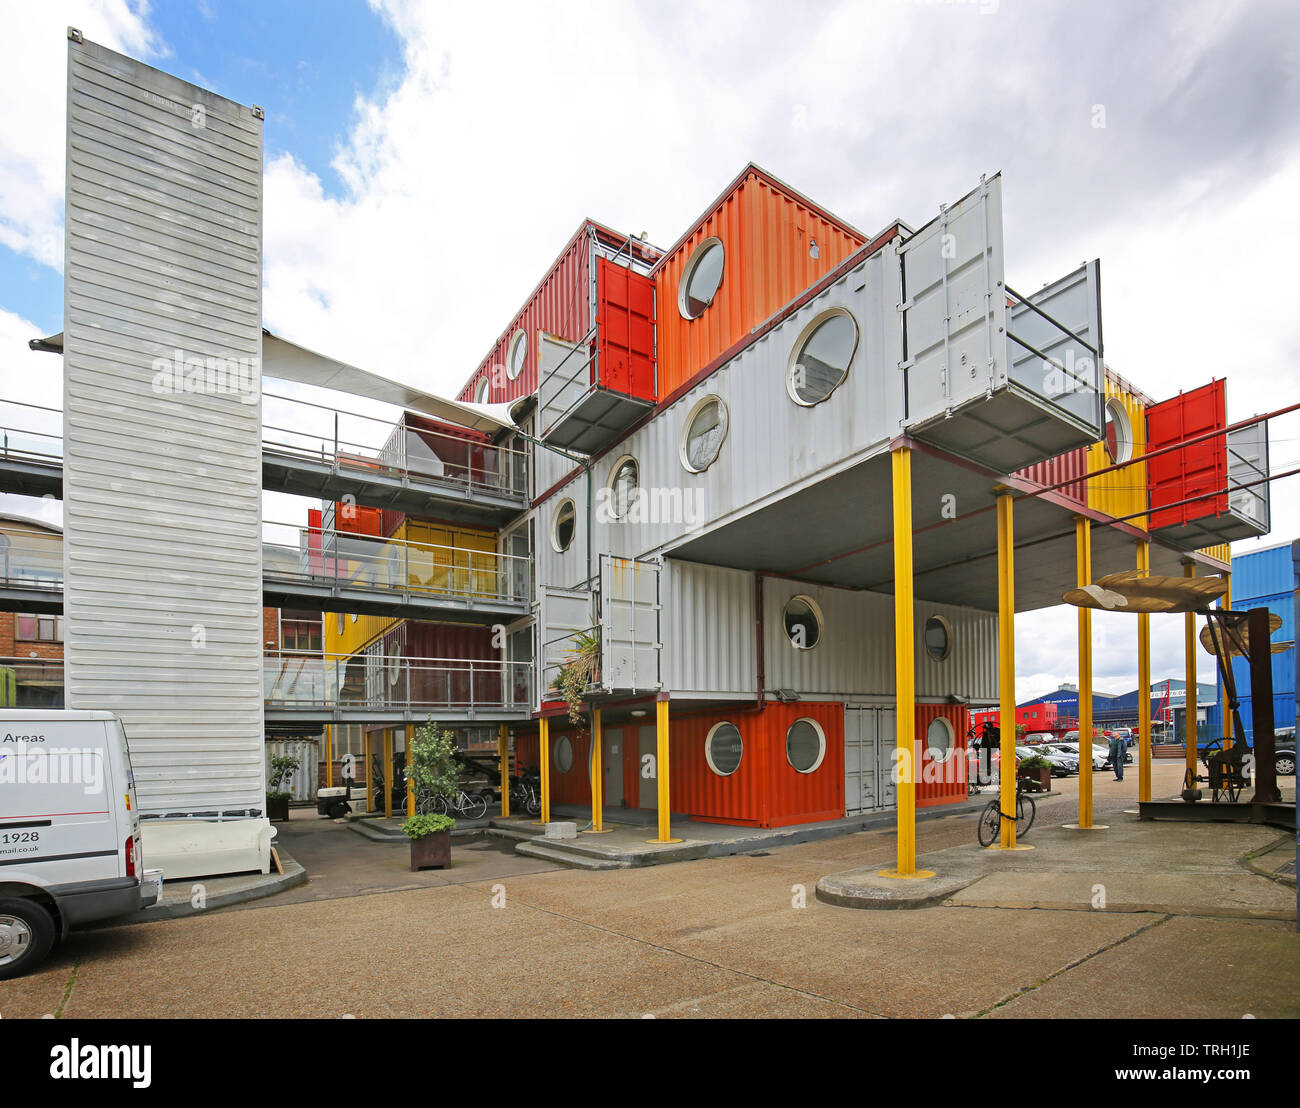 Container City 2 at Trinity Buoy Wharf, London, UK. Une collection d'espaces de vie et de travail construit à partir de contenants d'expédition. Banque D'Images